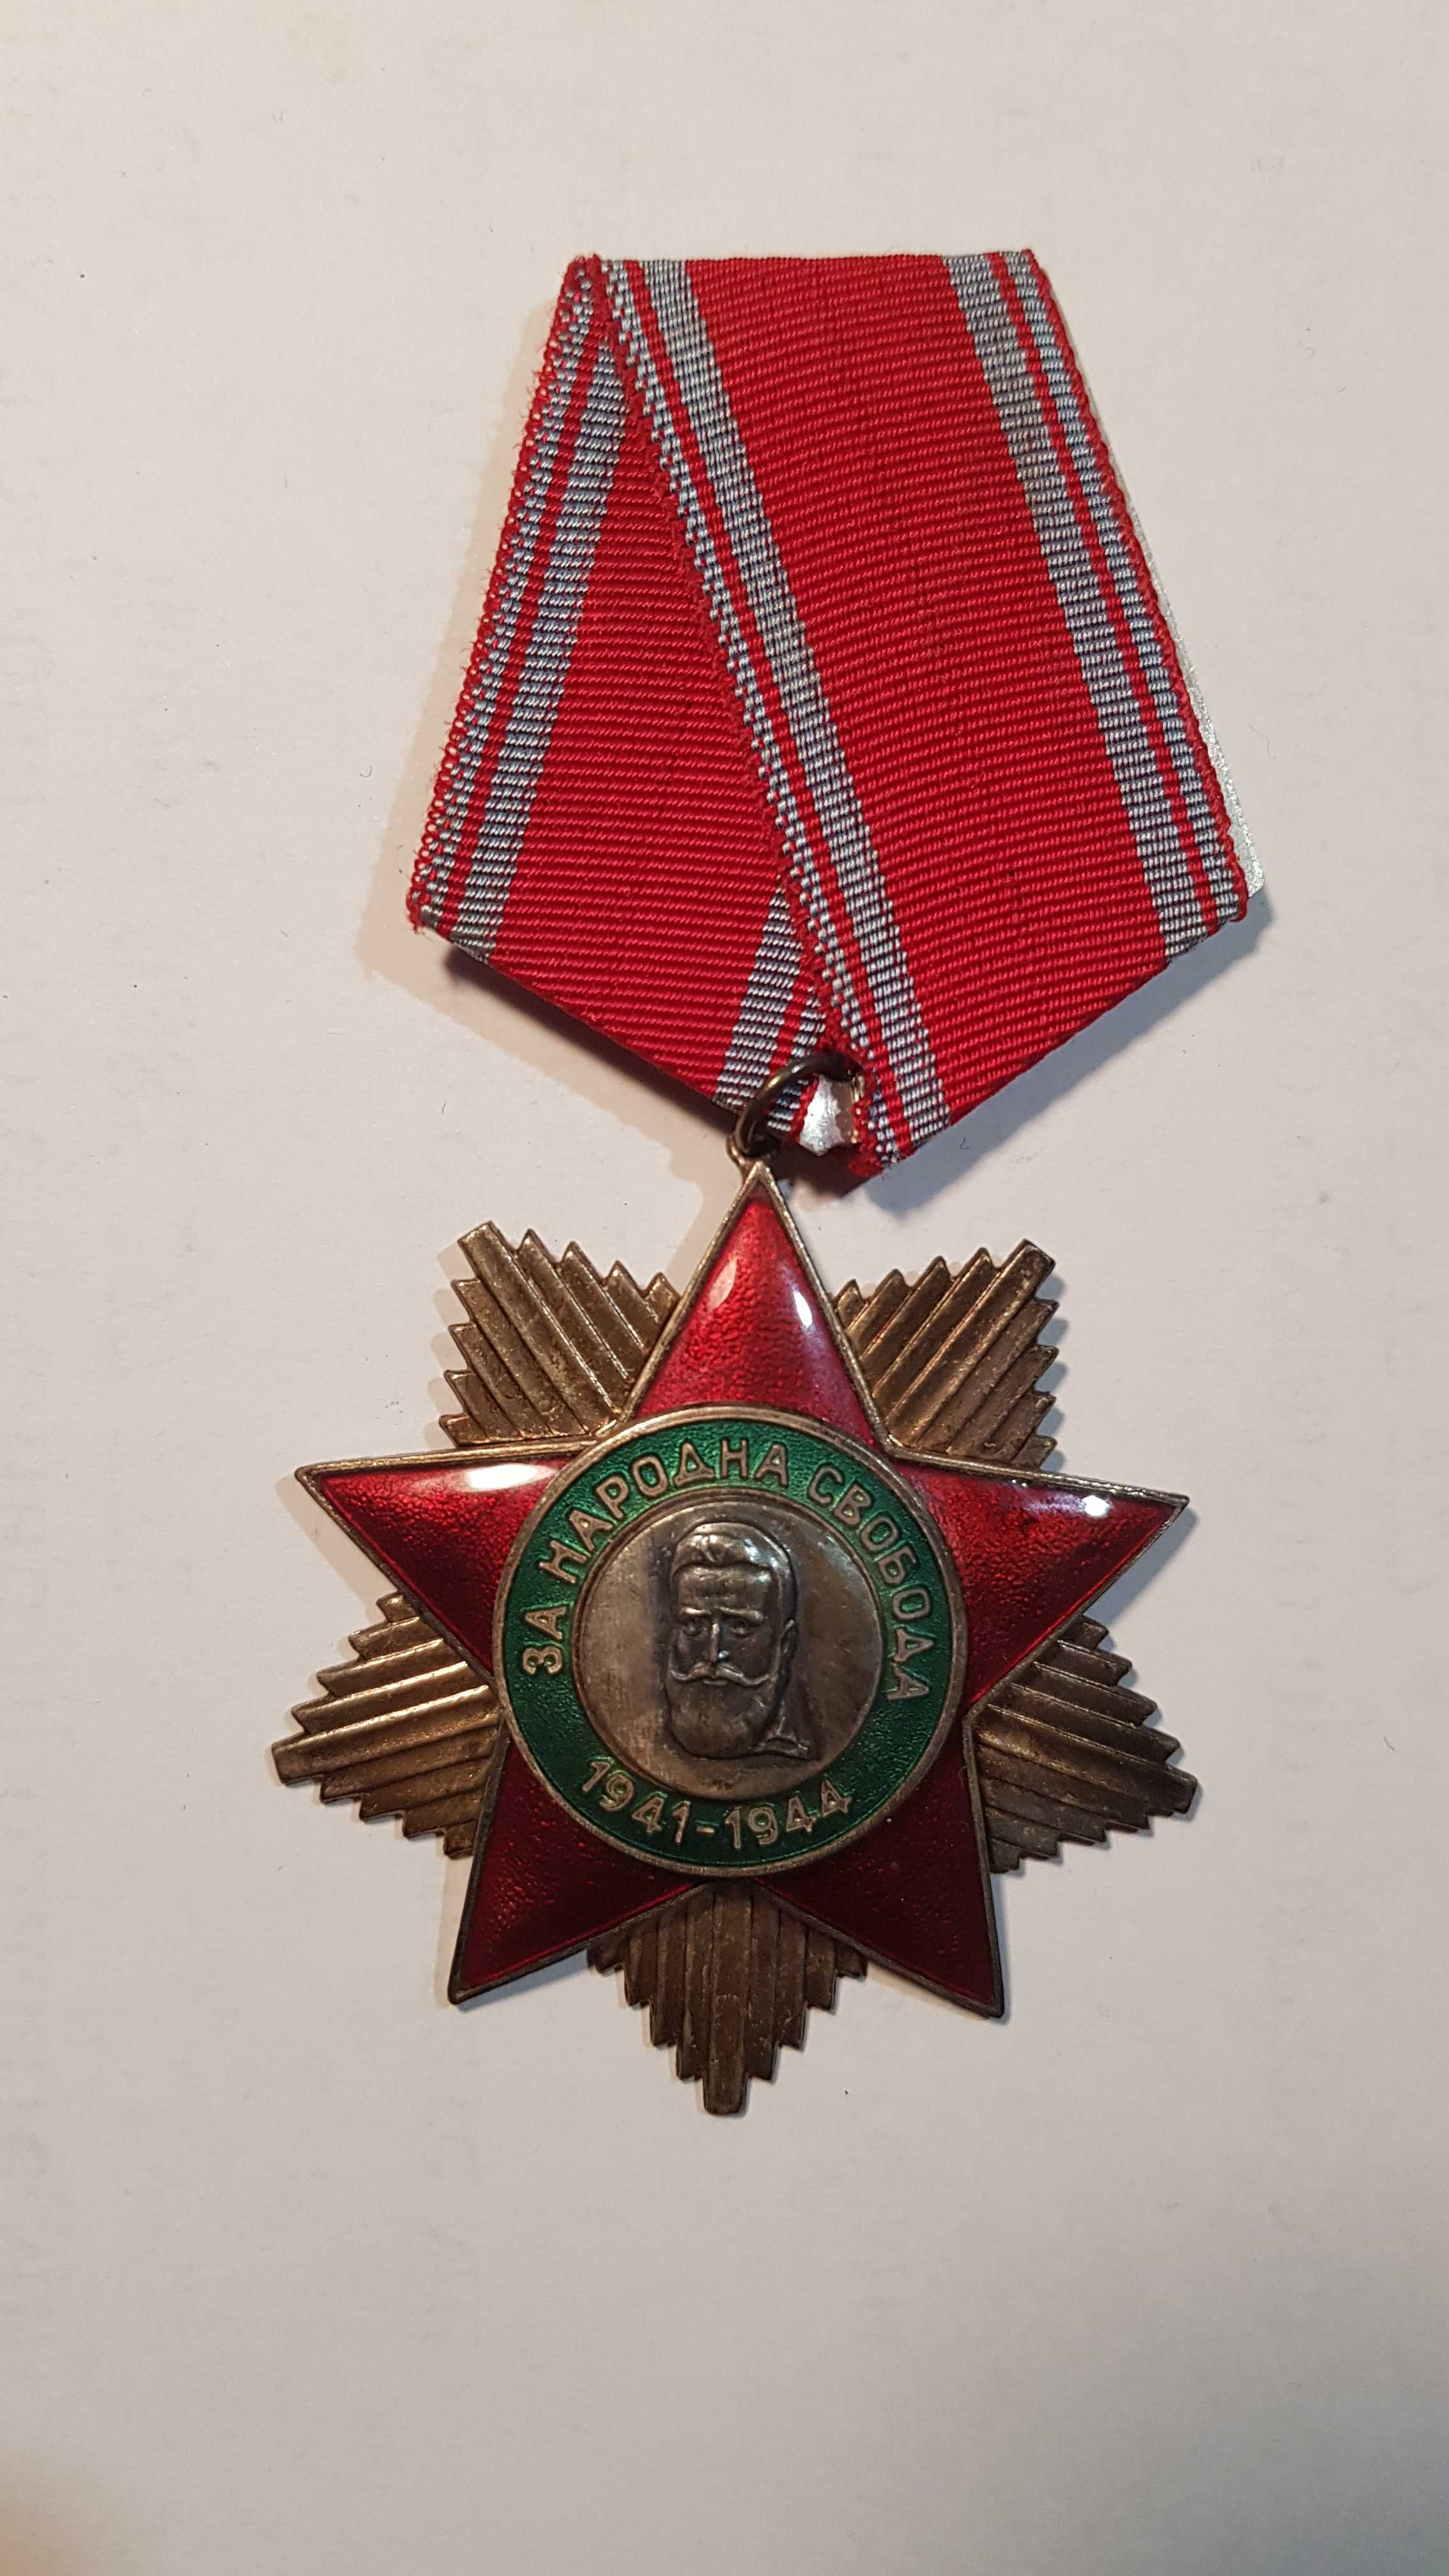 Медал от соца Народна свобода 41-44 II степен